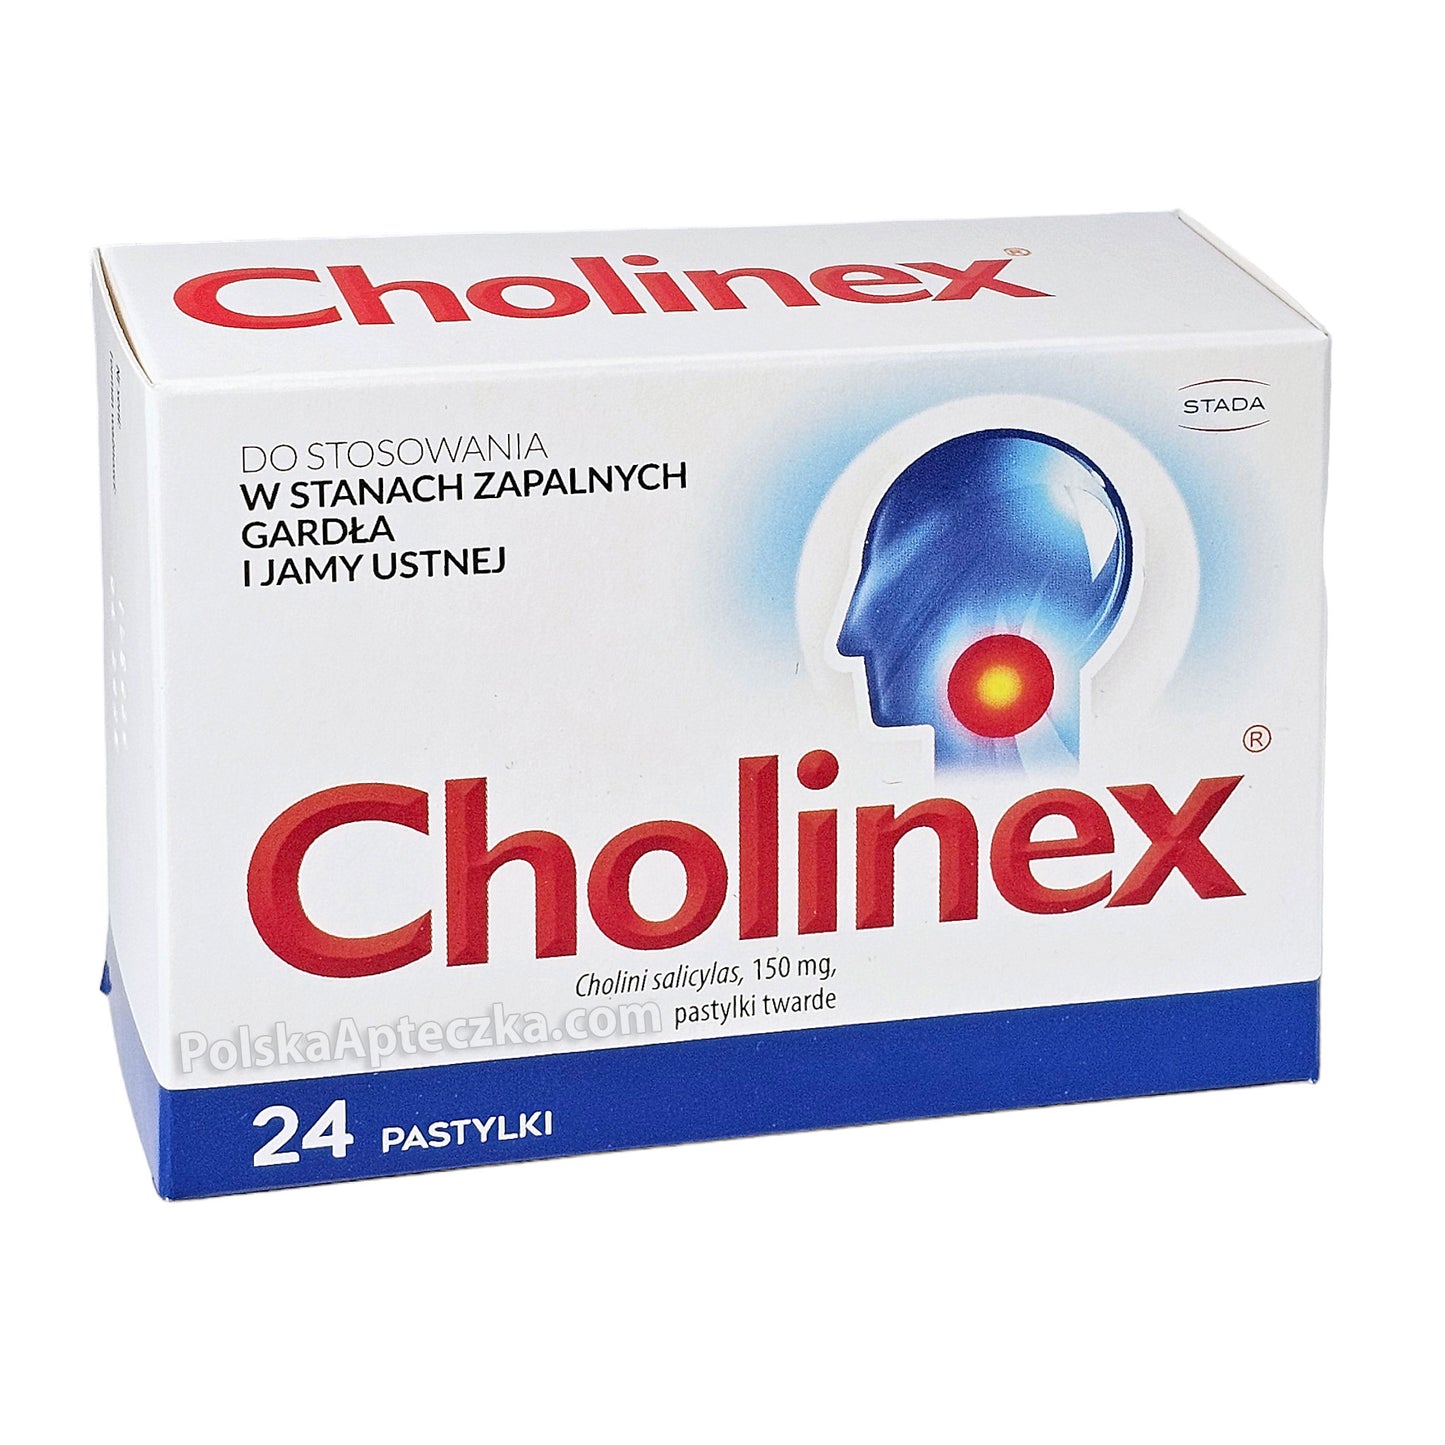 cholinex tablets